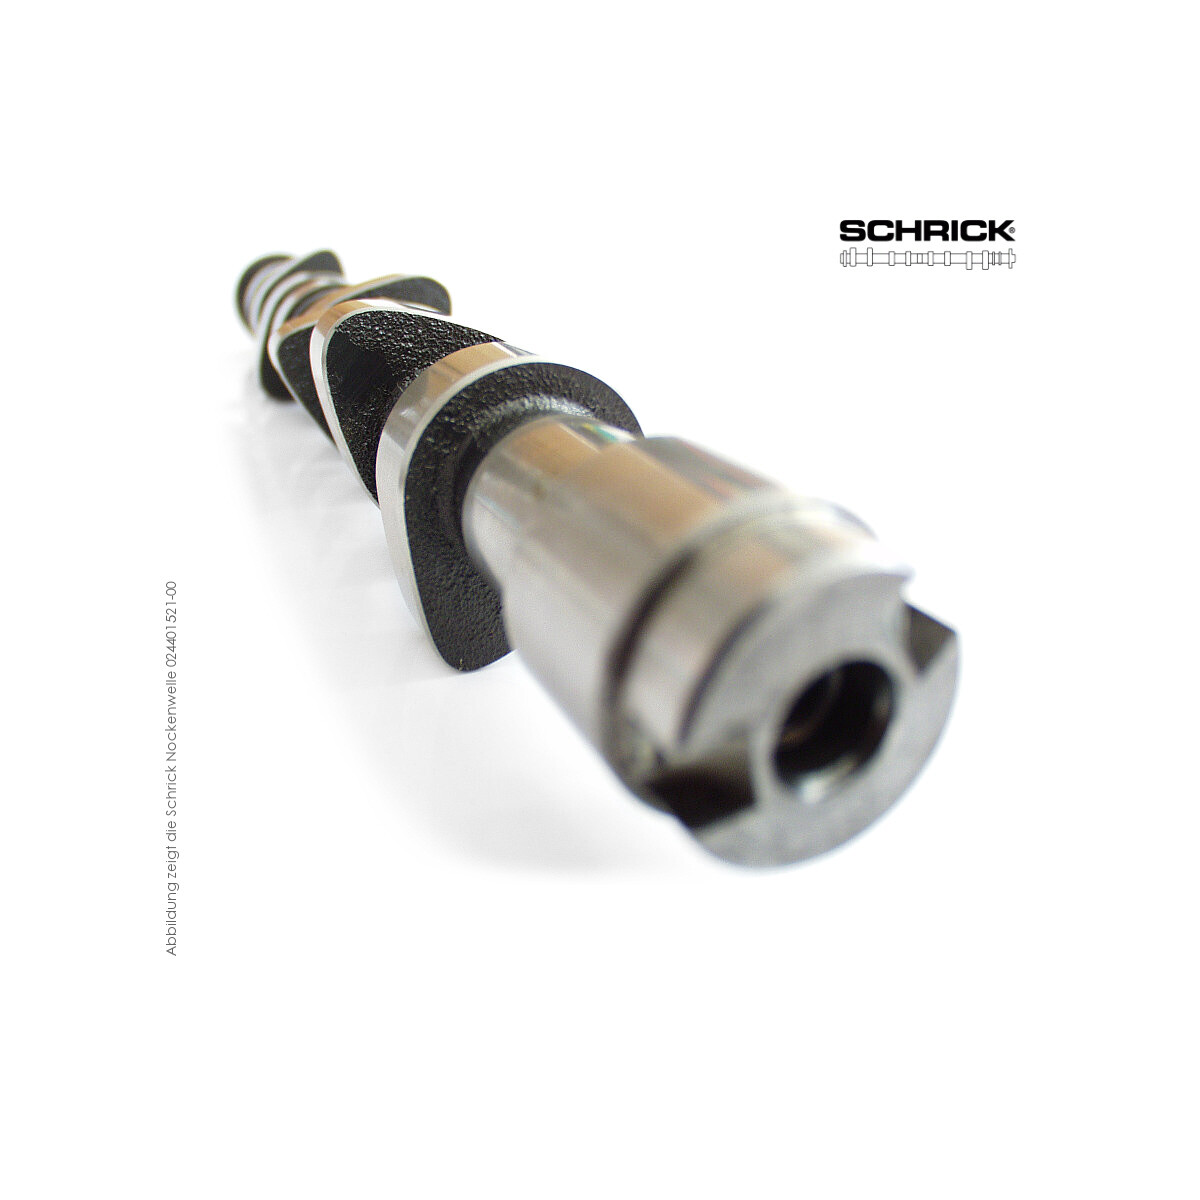 Schrick Nockenwelle für BMW M3 E36 | 3,2L 24V 6-Zyl. S50, S52  | 316° Einlassnockenwelle (Schrick 0284E1160-1V2)